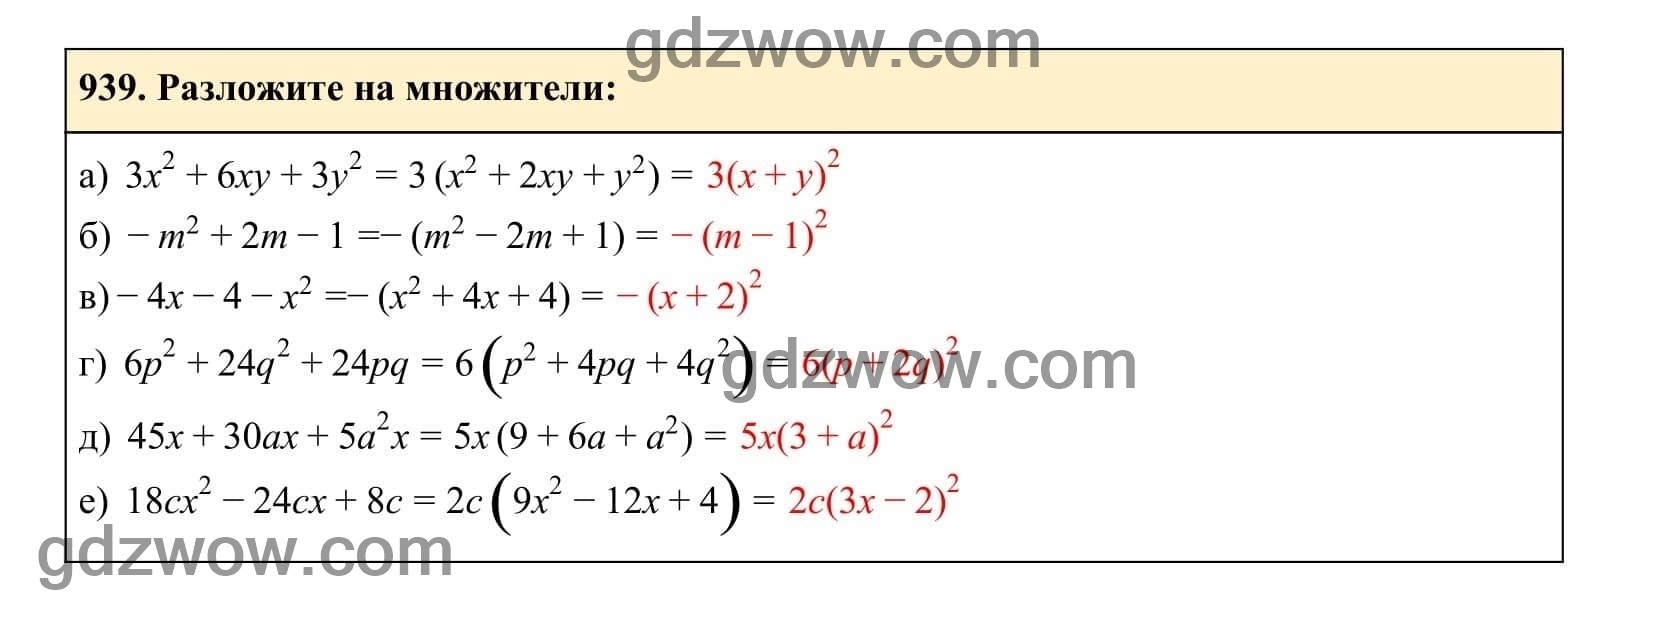 Упражнение 939 - ГДЗ по Алгебре 7 класс Учебник Макарычев (решебник) - GDZwow